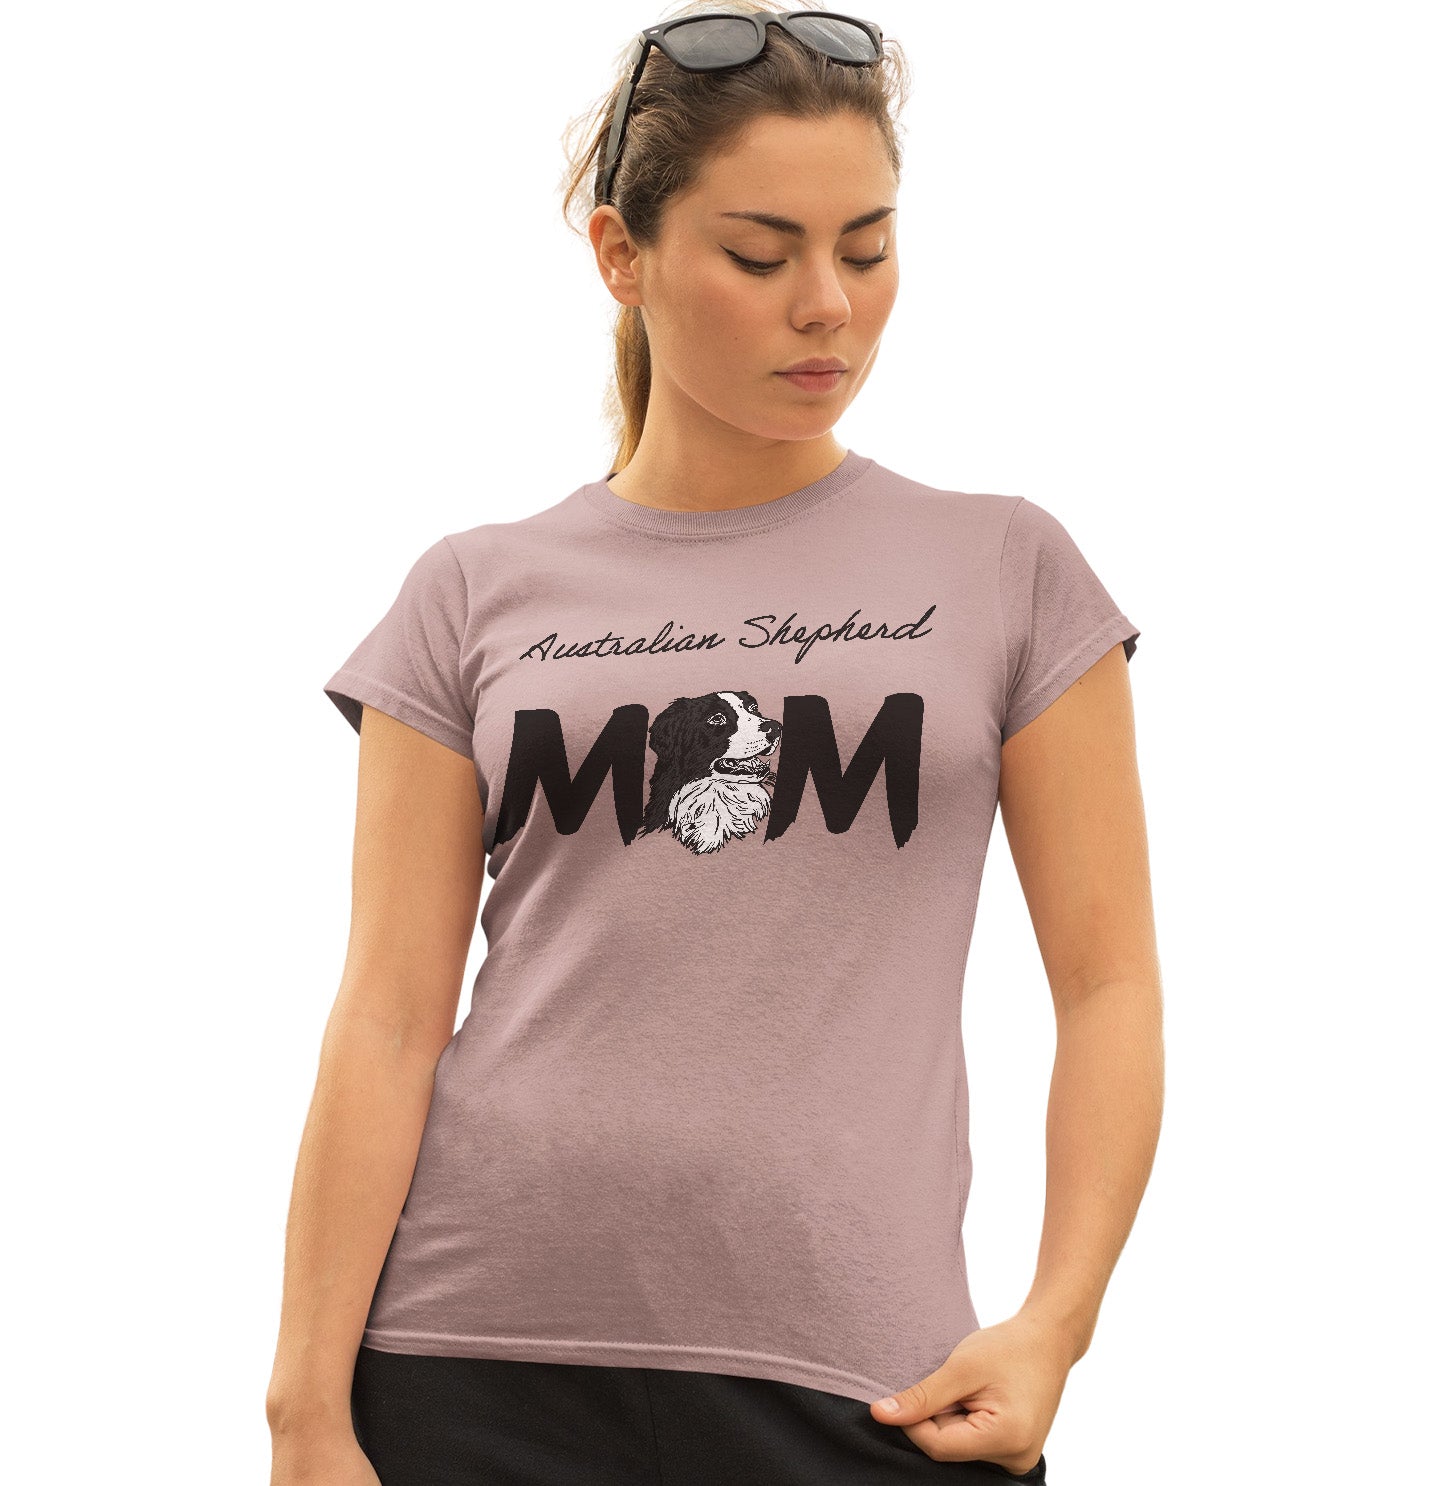 Australian Shepherd Breed Mom - Women's Fitted T-Shirt